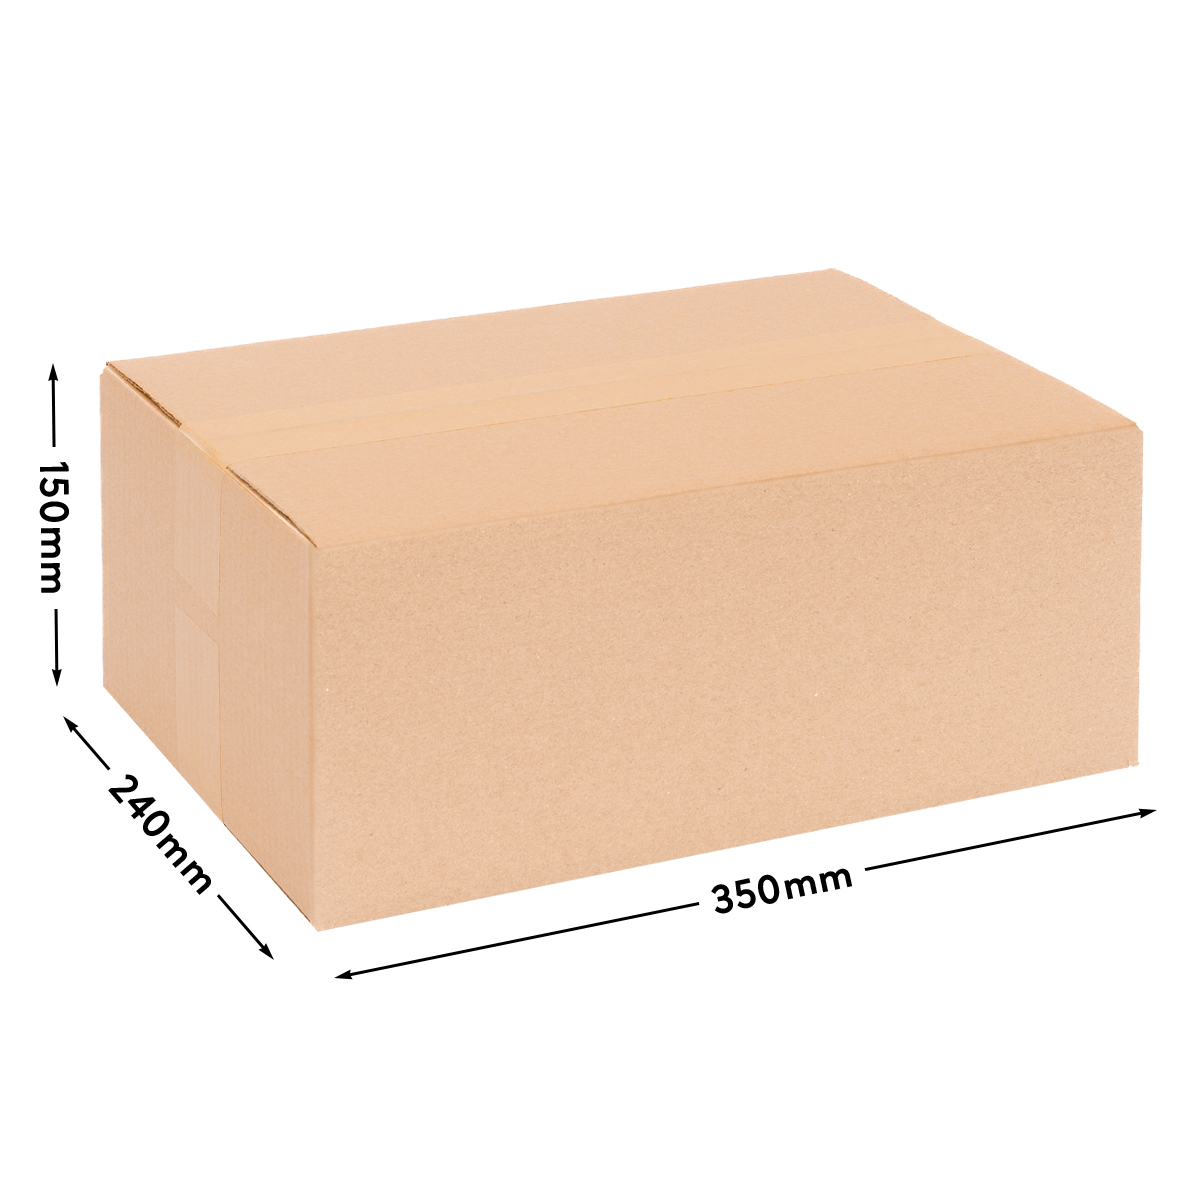 Cardboard box single wall 350x240x150 mm - KK 70